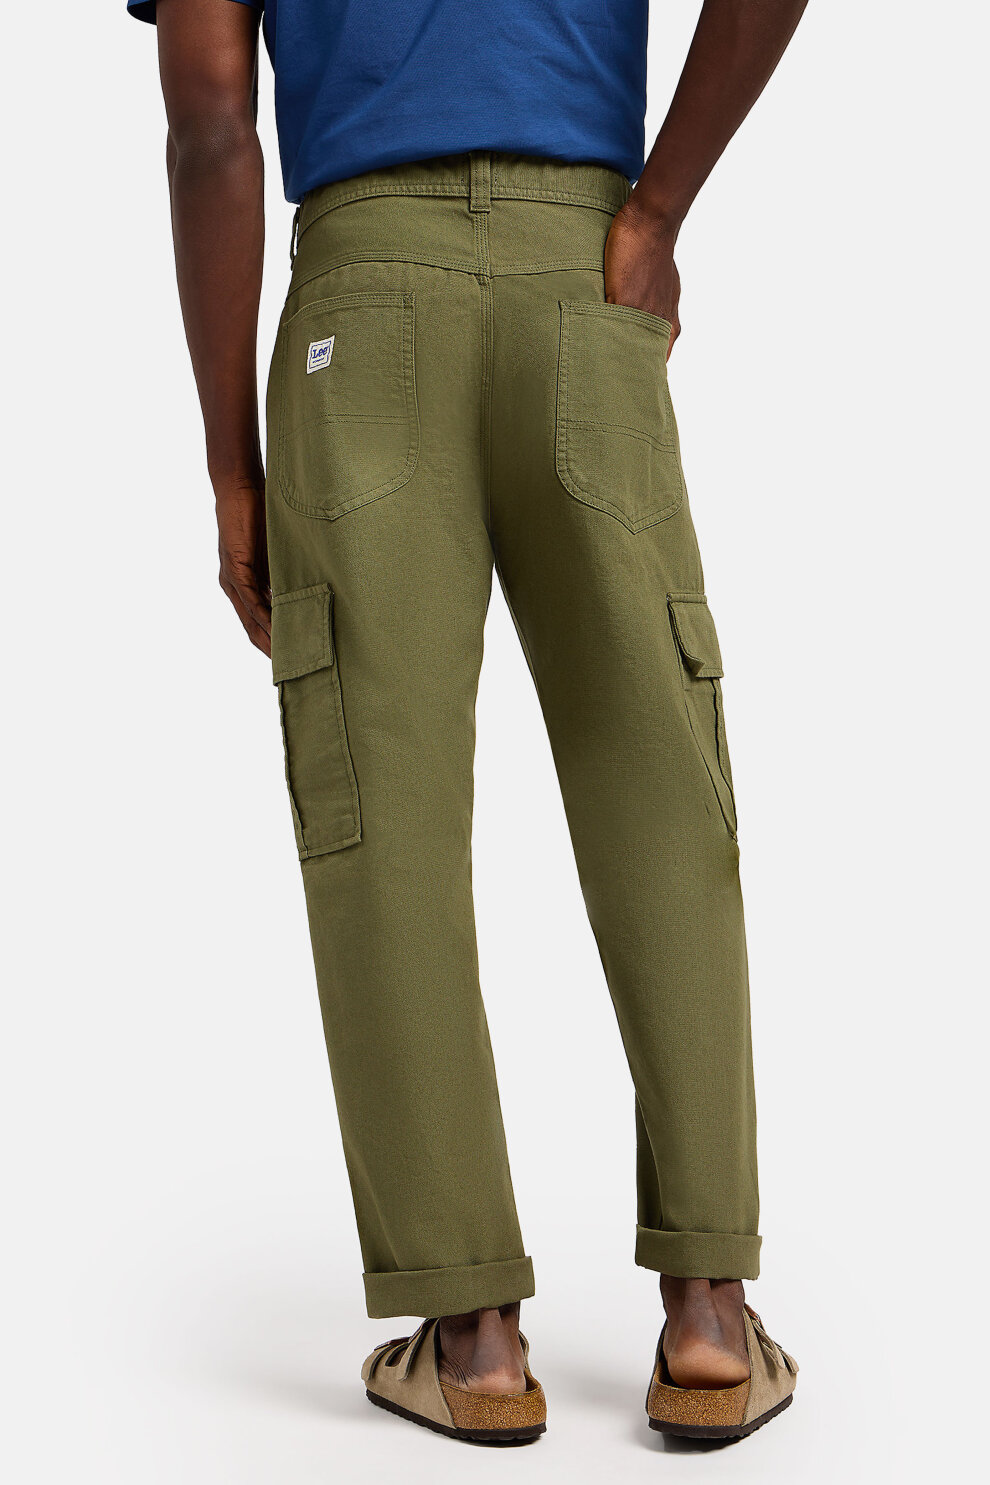 MUŠKARCI - Hlače - Lee Cargo hlače - Duge hlače - Zelena